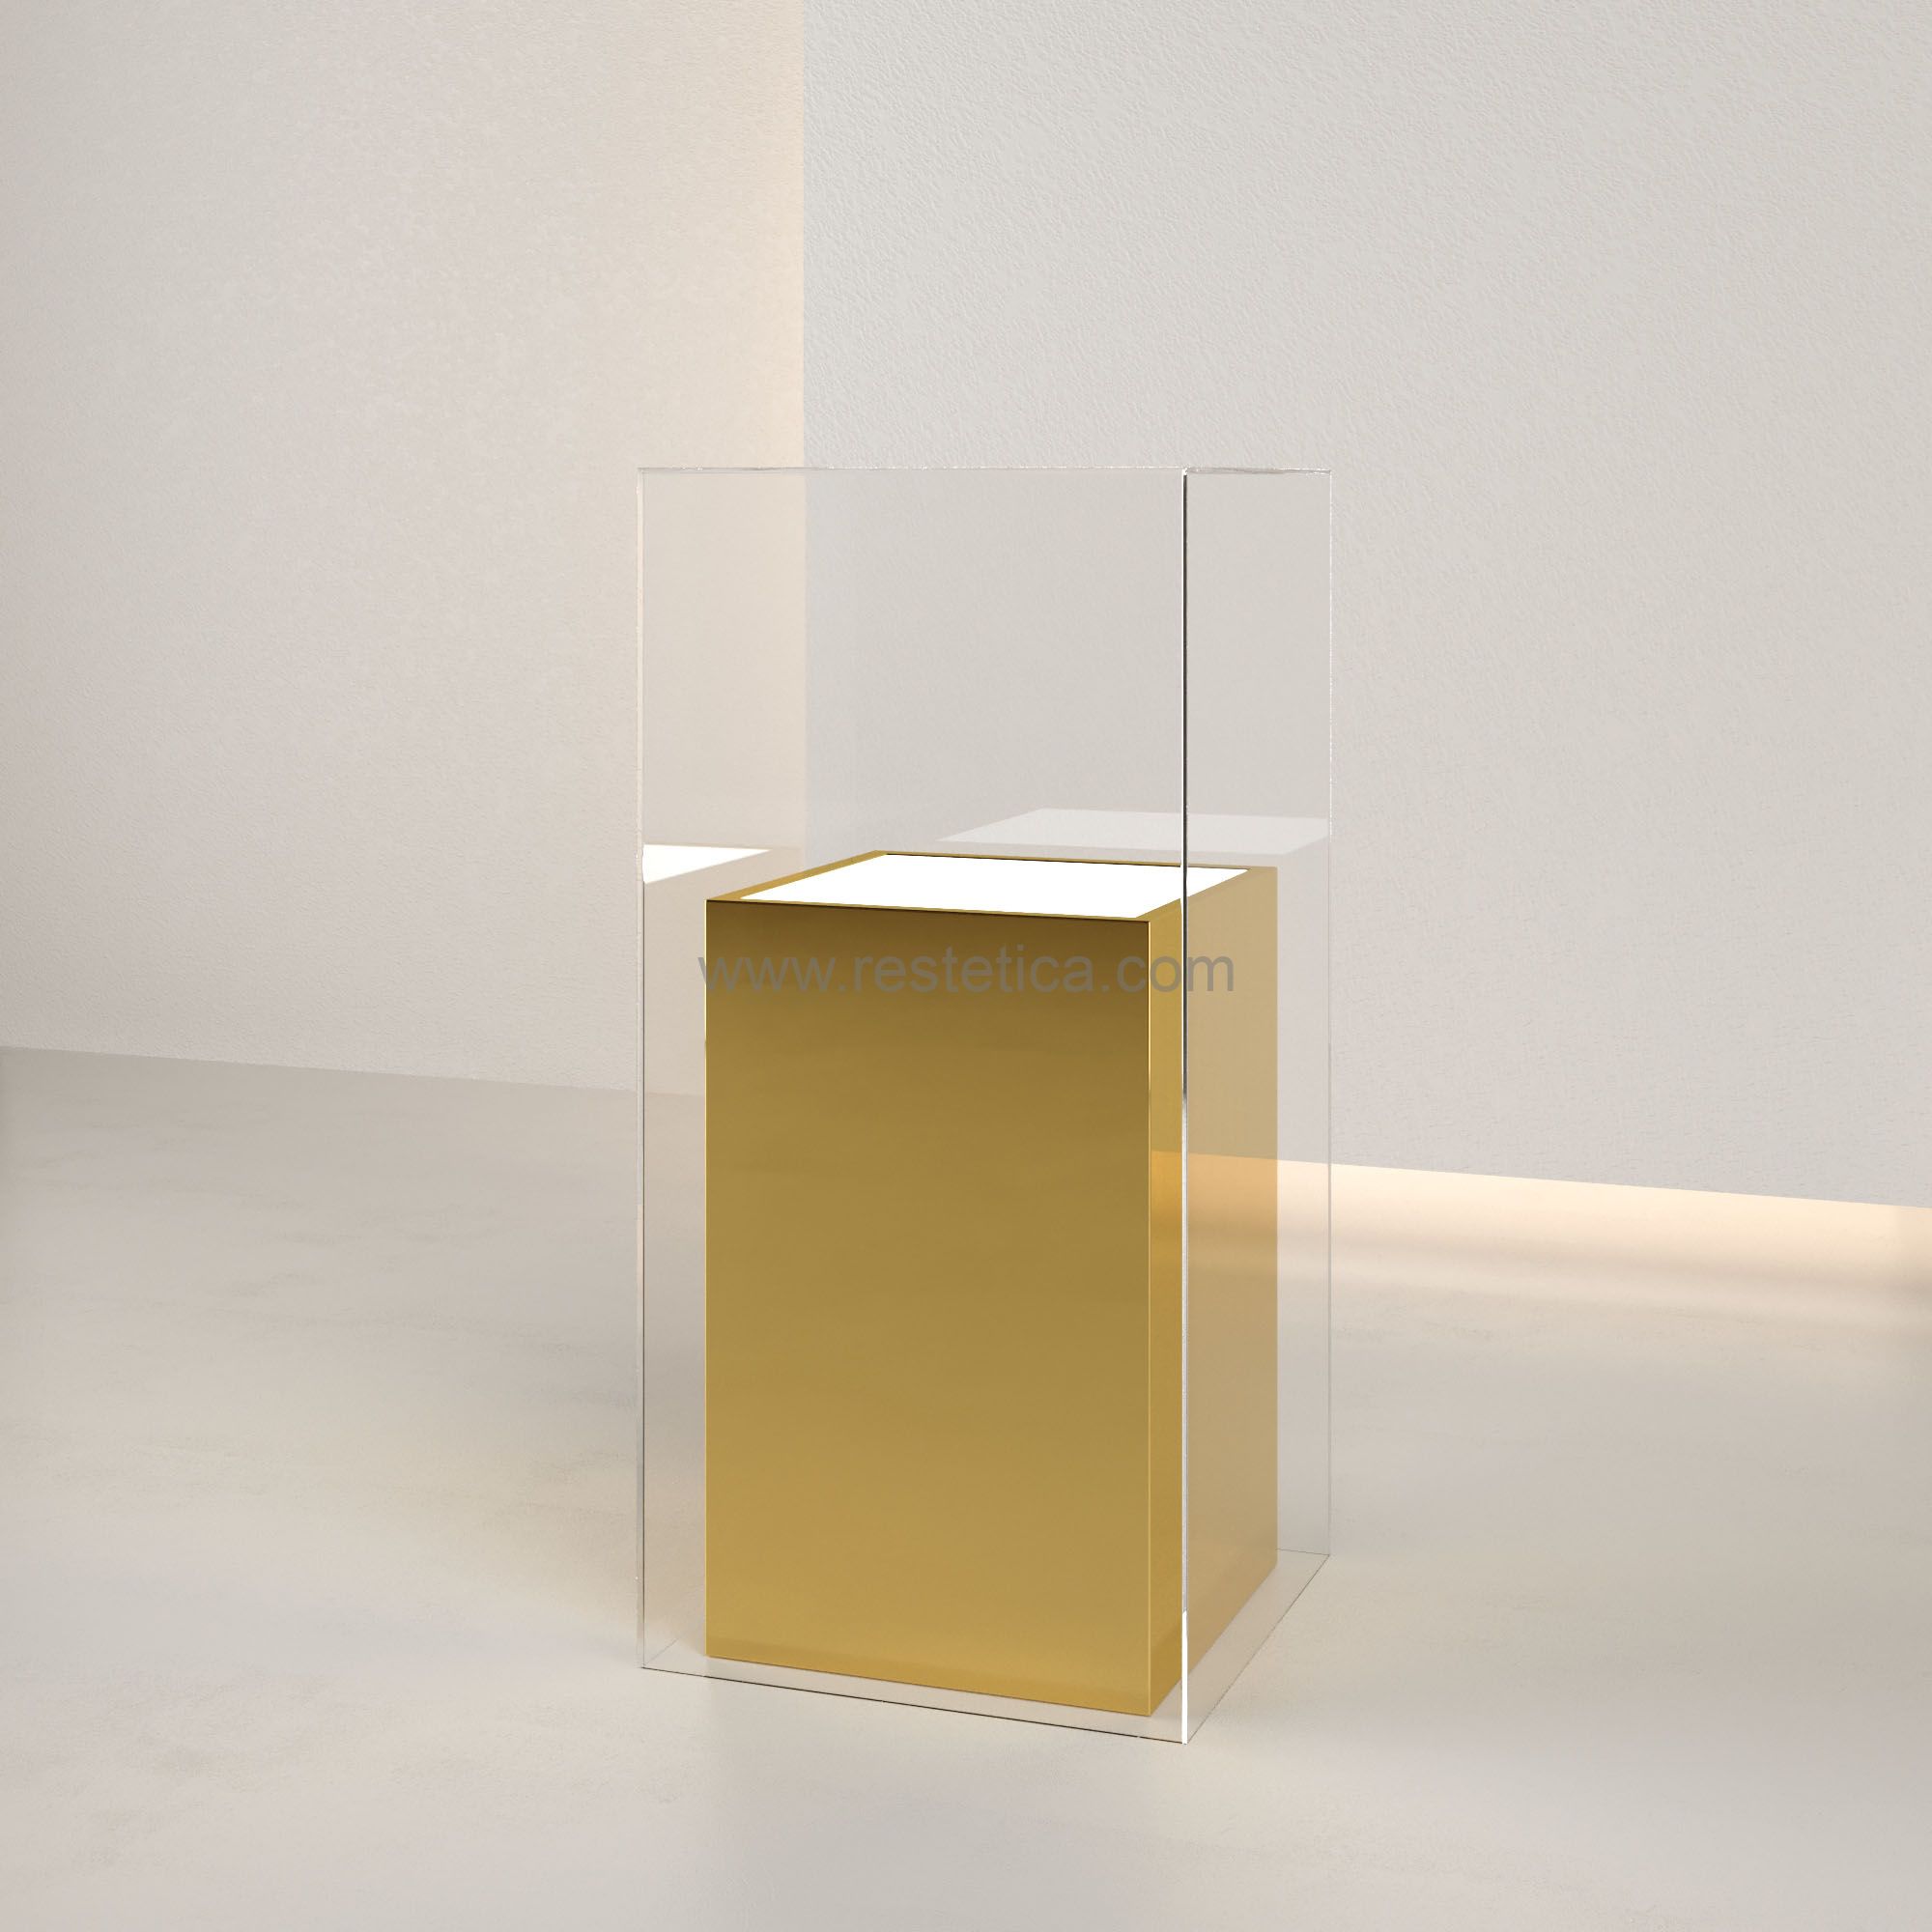 Teca in dibond oro con piano superiore luminoso e teca esterna in plexiglass  misure 35x35